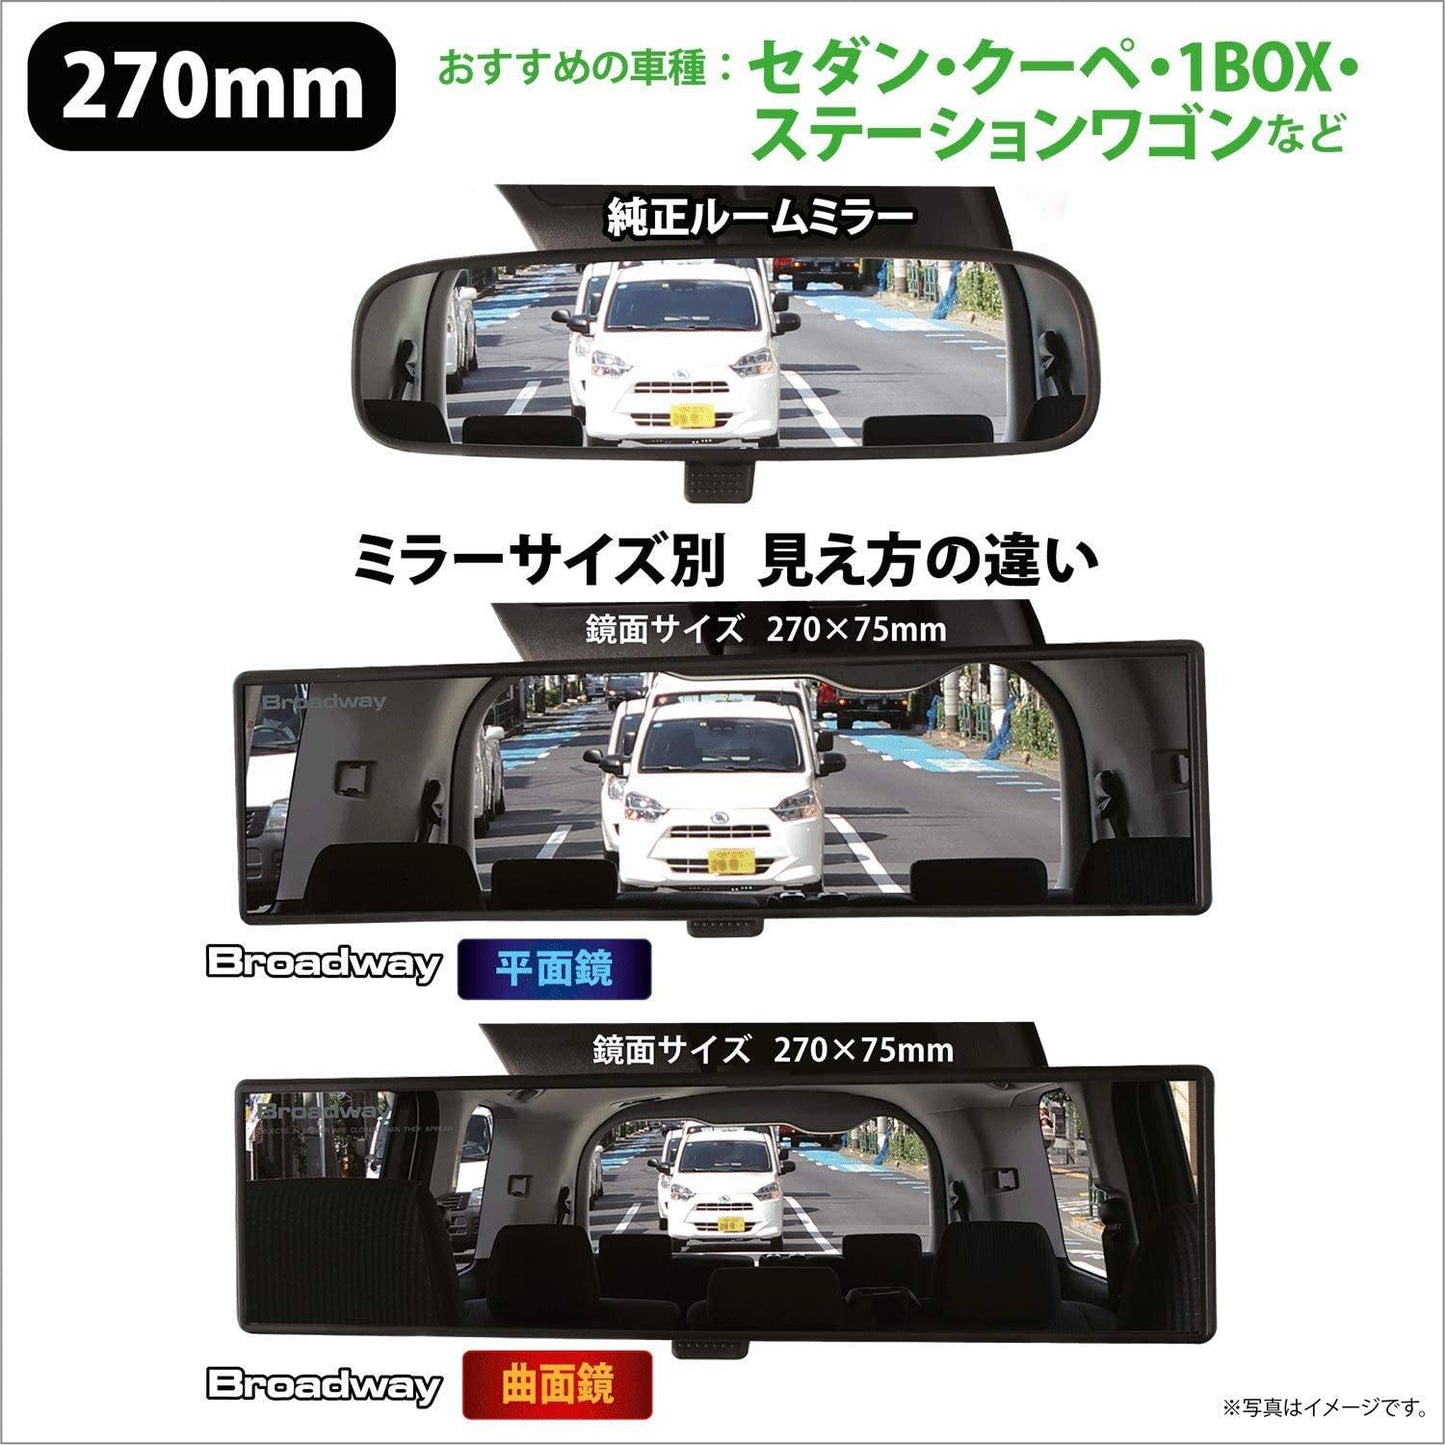 日本 NAPOLEX | BROADWAY Chrome Plating 鉻合金鏡面倒後鏡 270mm | MOOBI 香港網上汽車用品店 p3